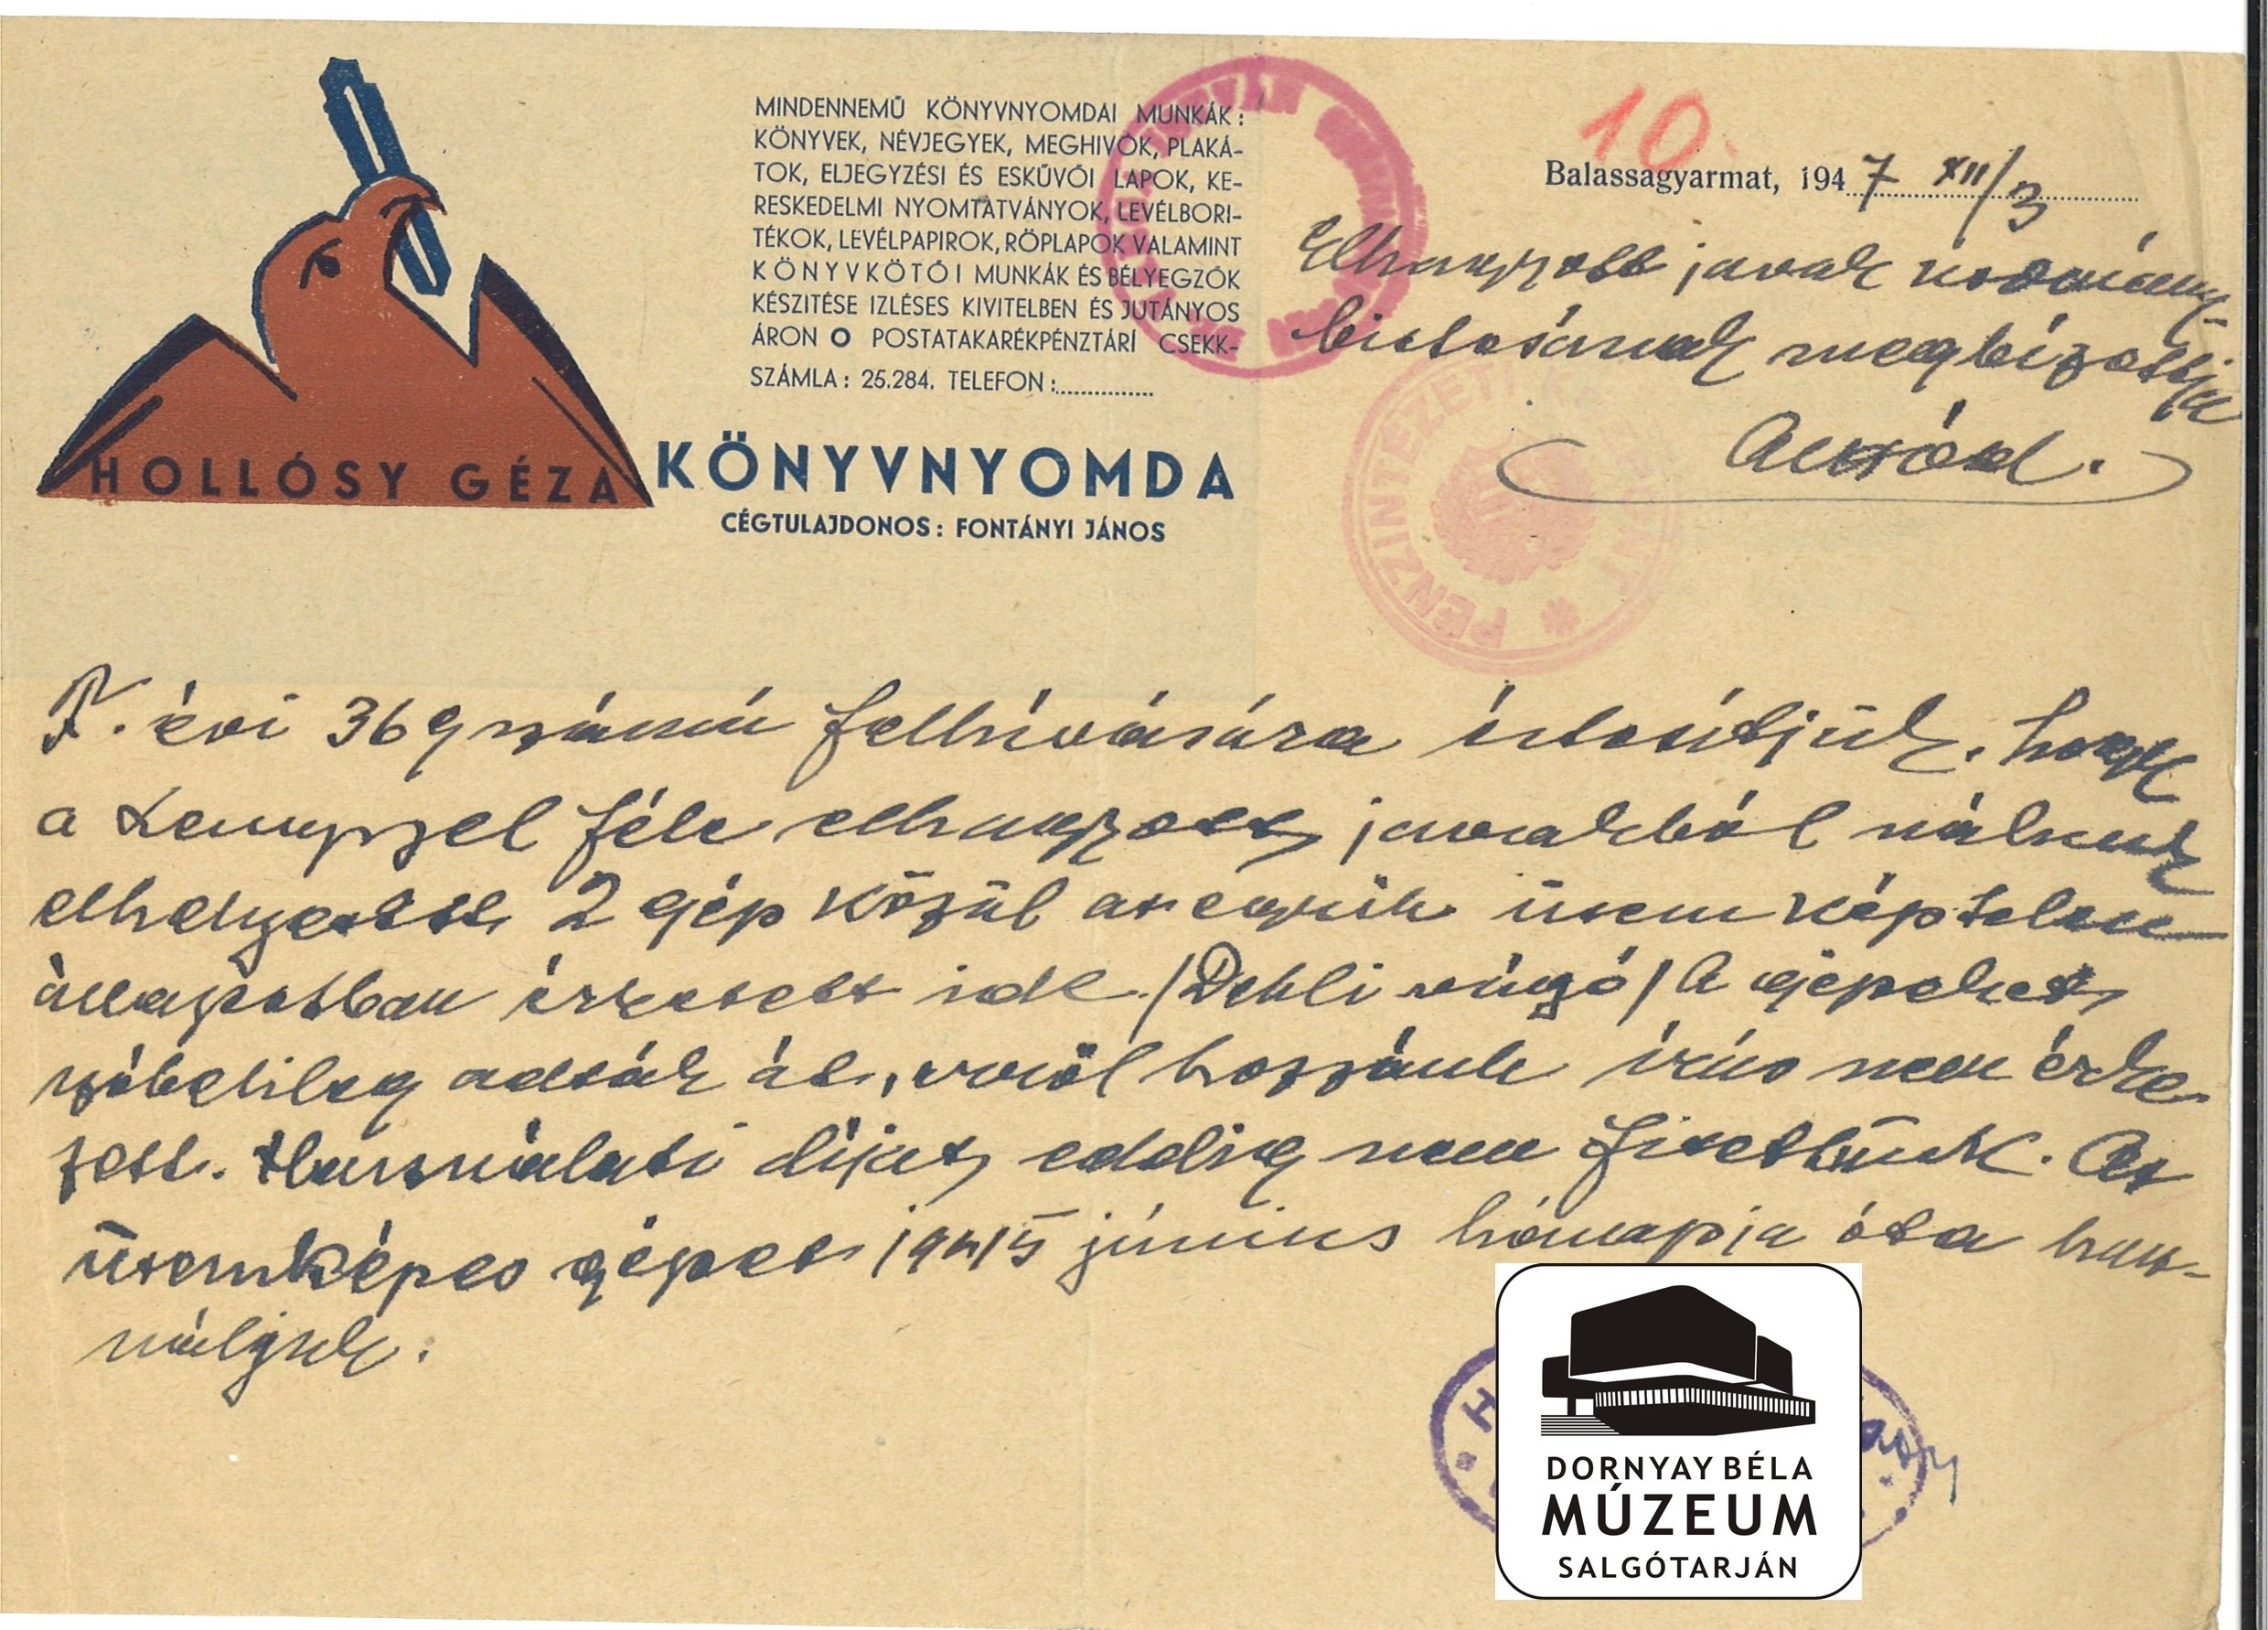 Hollósy Géza Balassagyarmati Könyvnyomda levele (Dornyay Béla Múzeum, Salgótarján CC BY-NC-SA)